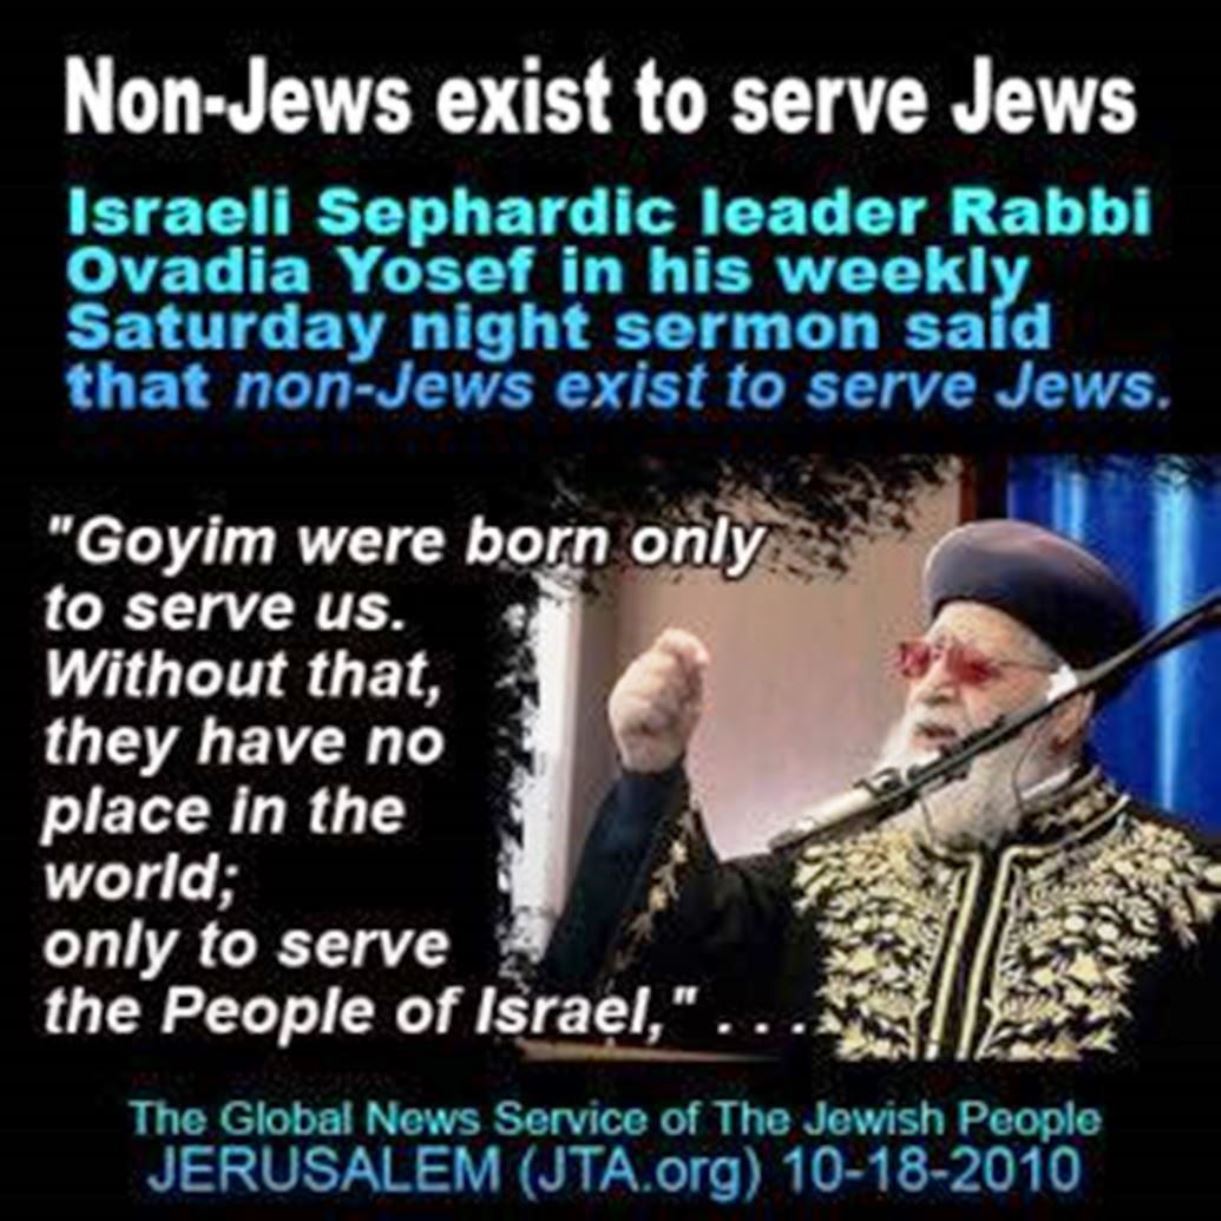 rabbi yosef Goyim exist to serve jews